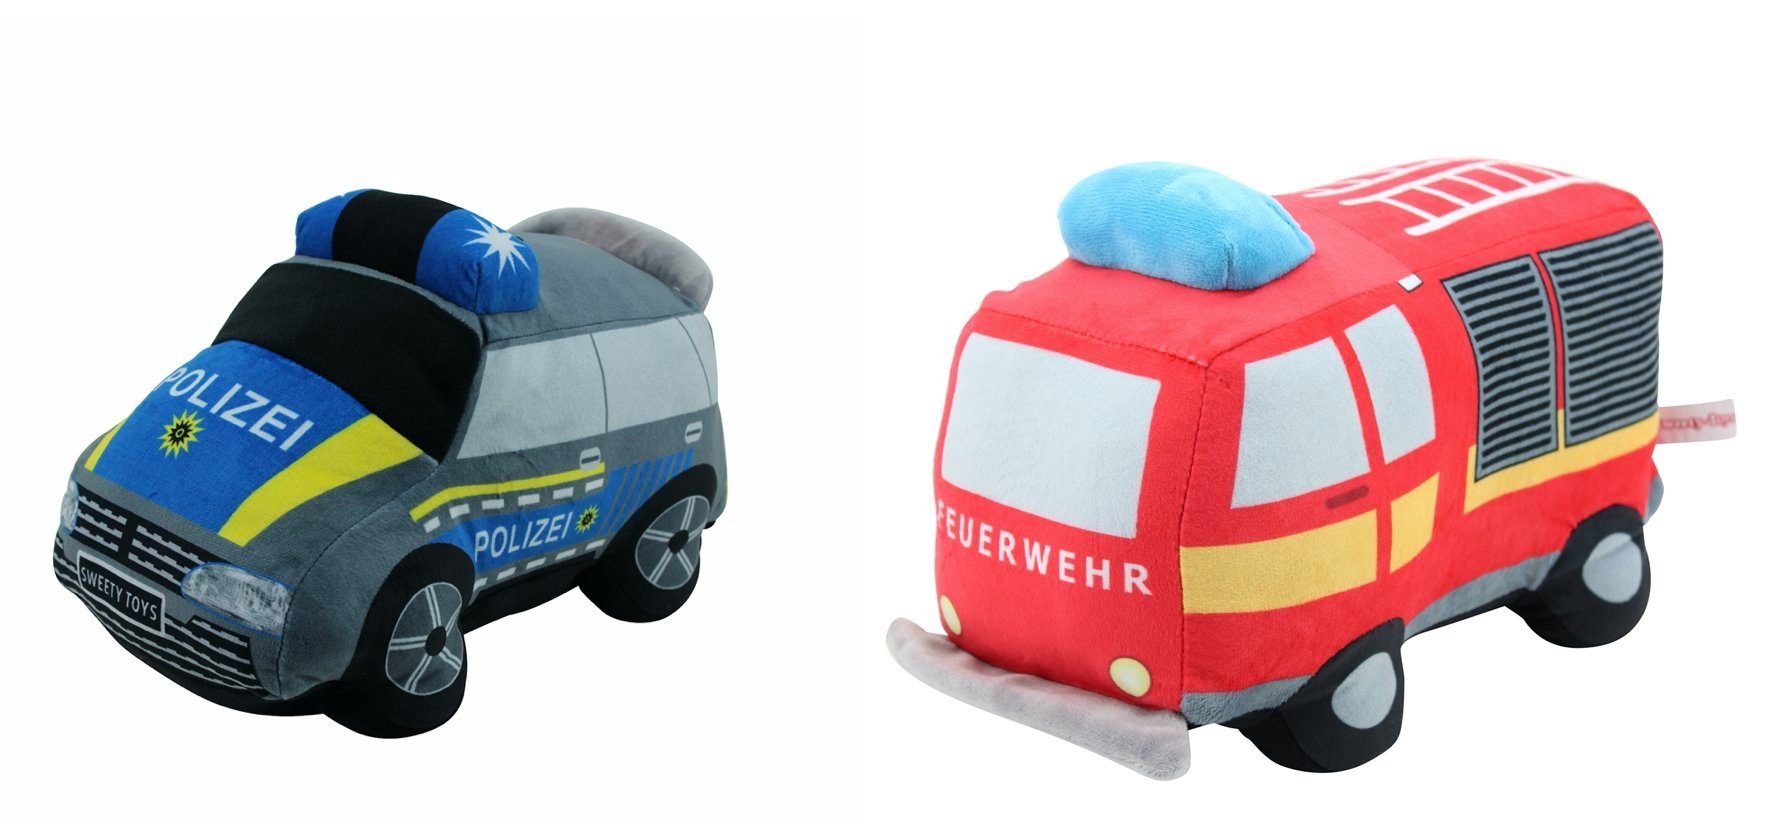 Sweety-Toys Kuscheltier »Sweety Toys 14064 Feuerwehrauto und Polizeiauto  Plüschtier Kuscheltier«